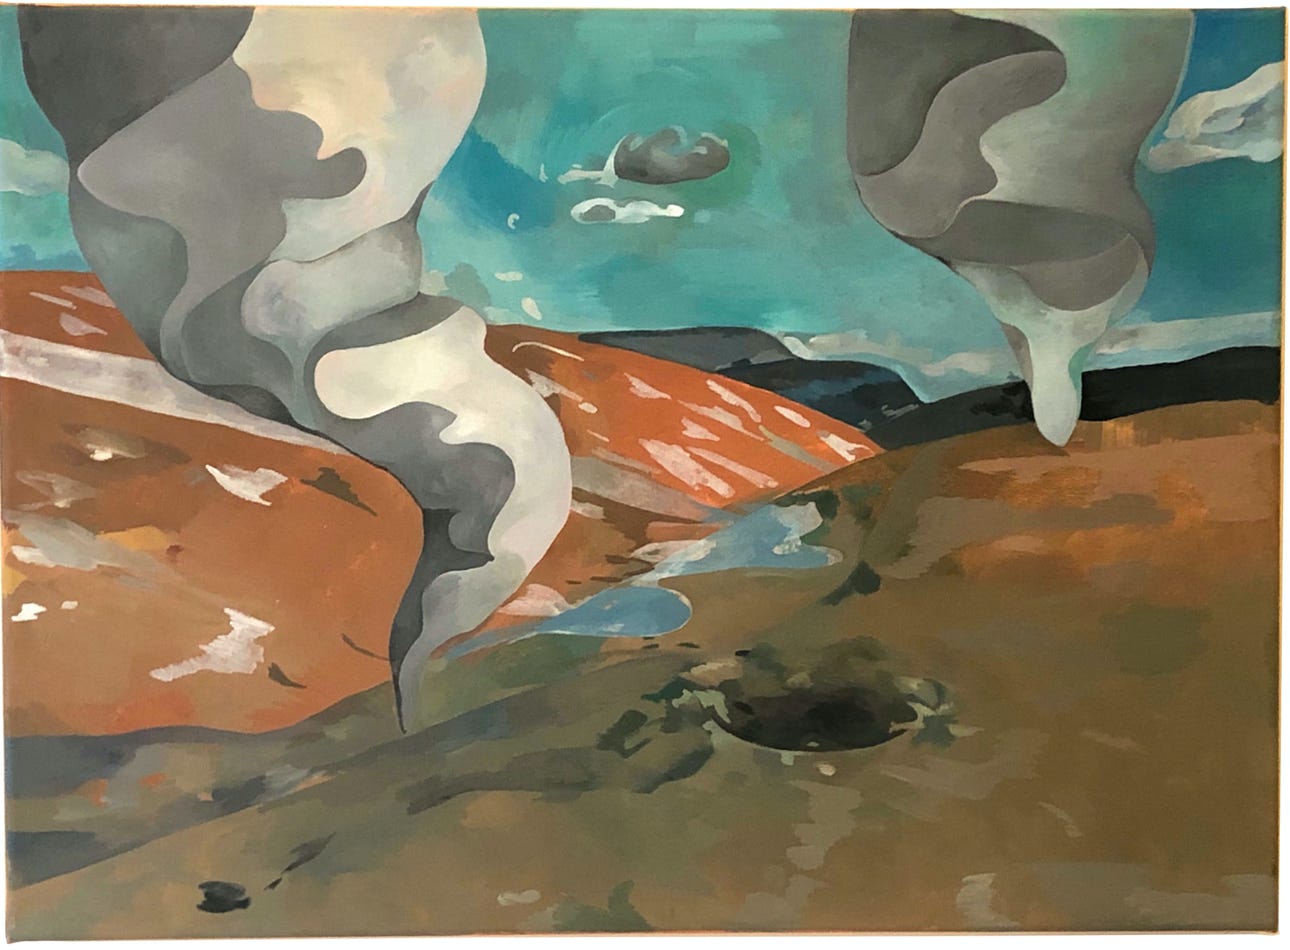 Tornado landscape, 2019, - 55 cm x 45 cm, oil on canvas